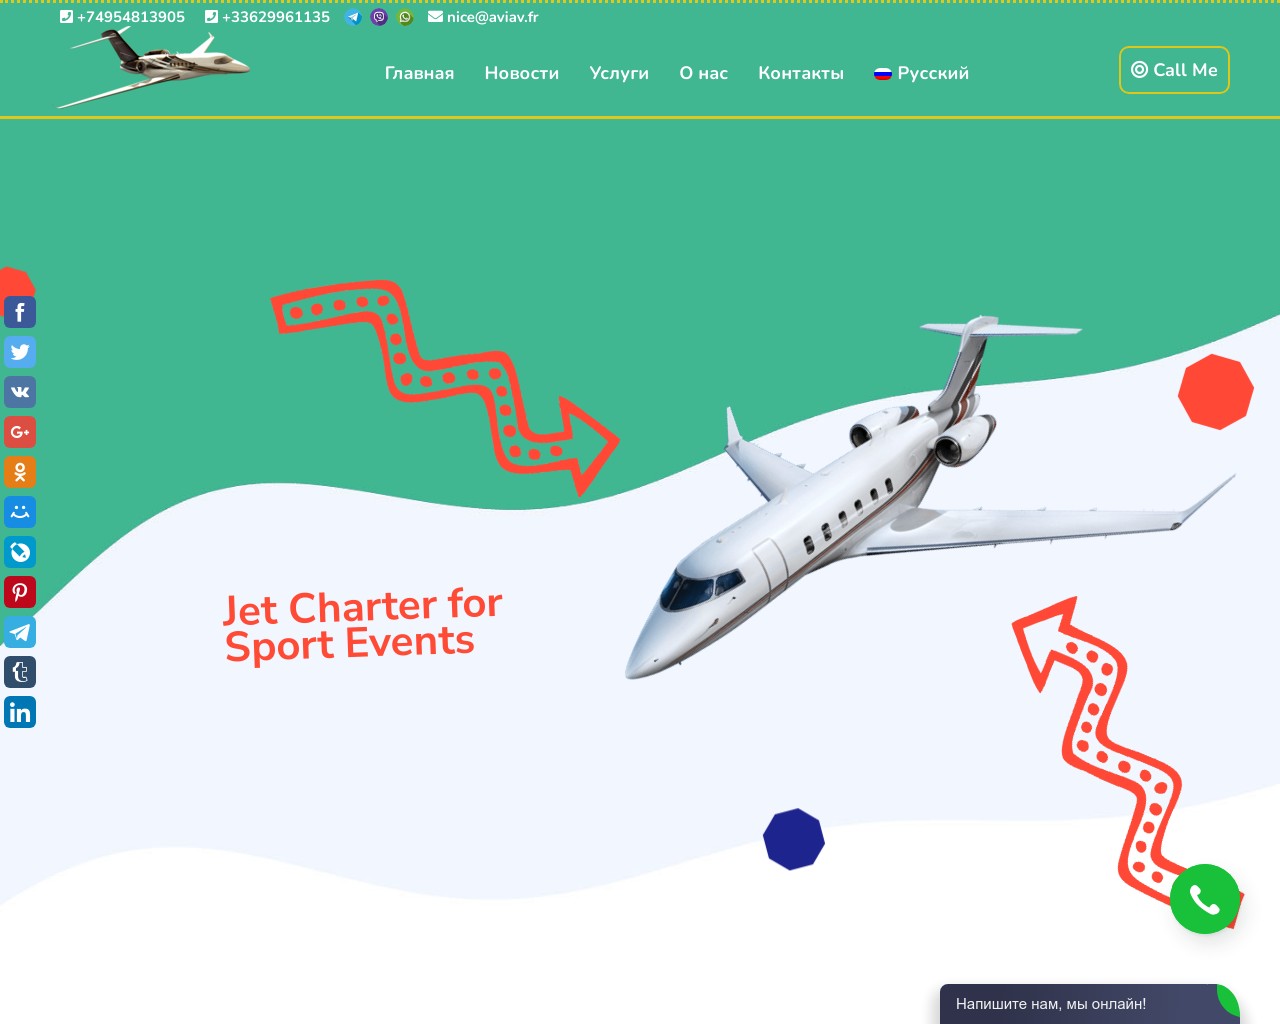 Изображение скриншота сайта - Перелеты частным самолетом на спортивные события